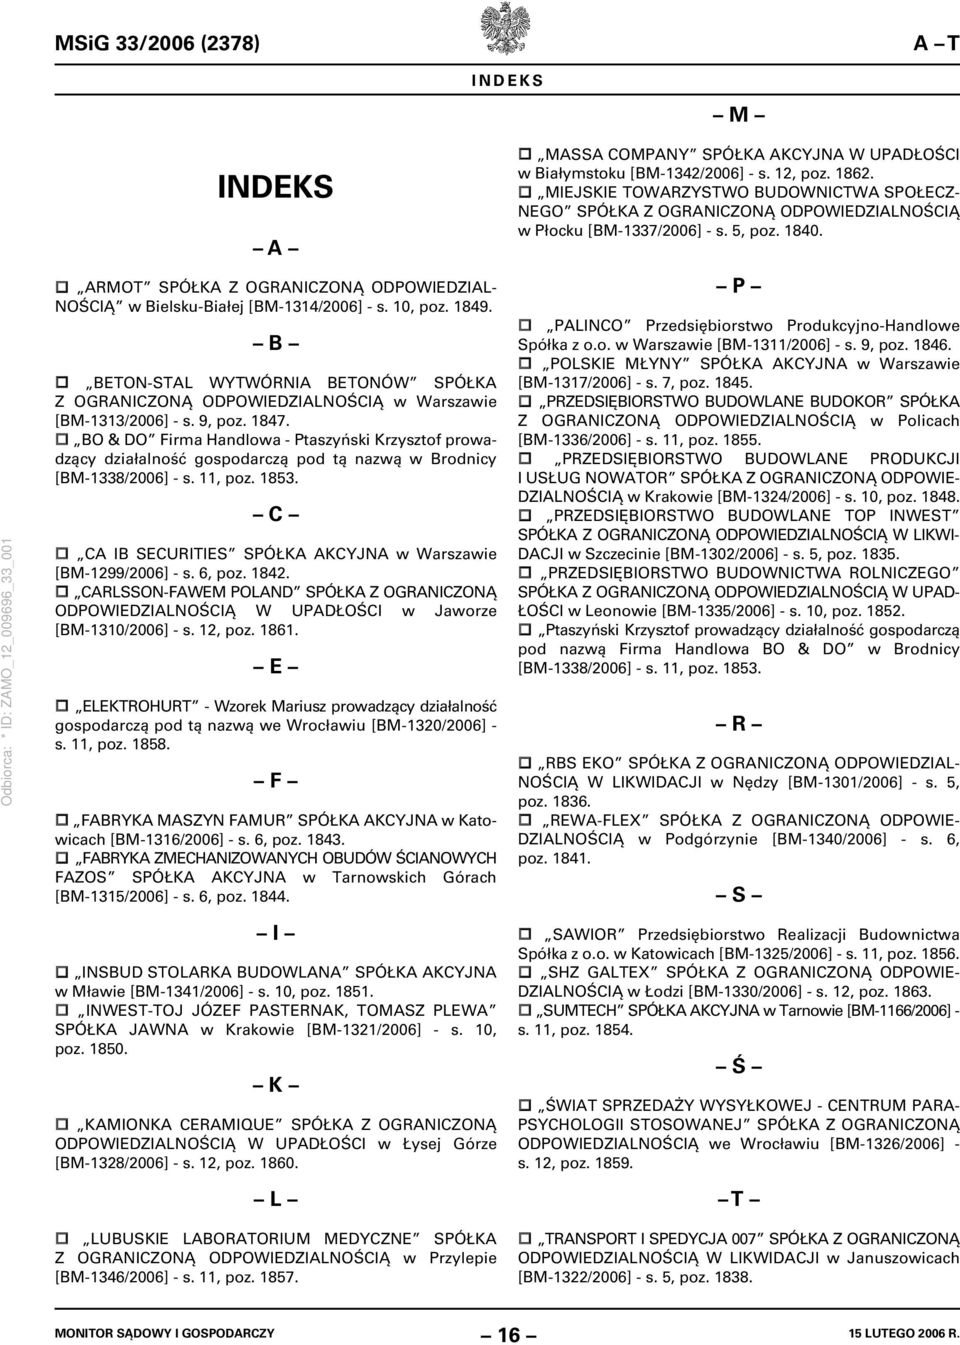 BO & DO Firma Handlowa - Ptaszyński Krzysztof prowadzący działalność gospodarczą pod tą nazwą w Brodnicy [BM-1338/2006] - s. 11, poz. 1853.